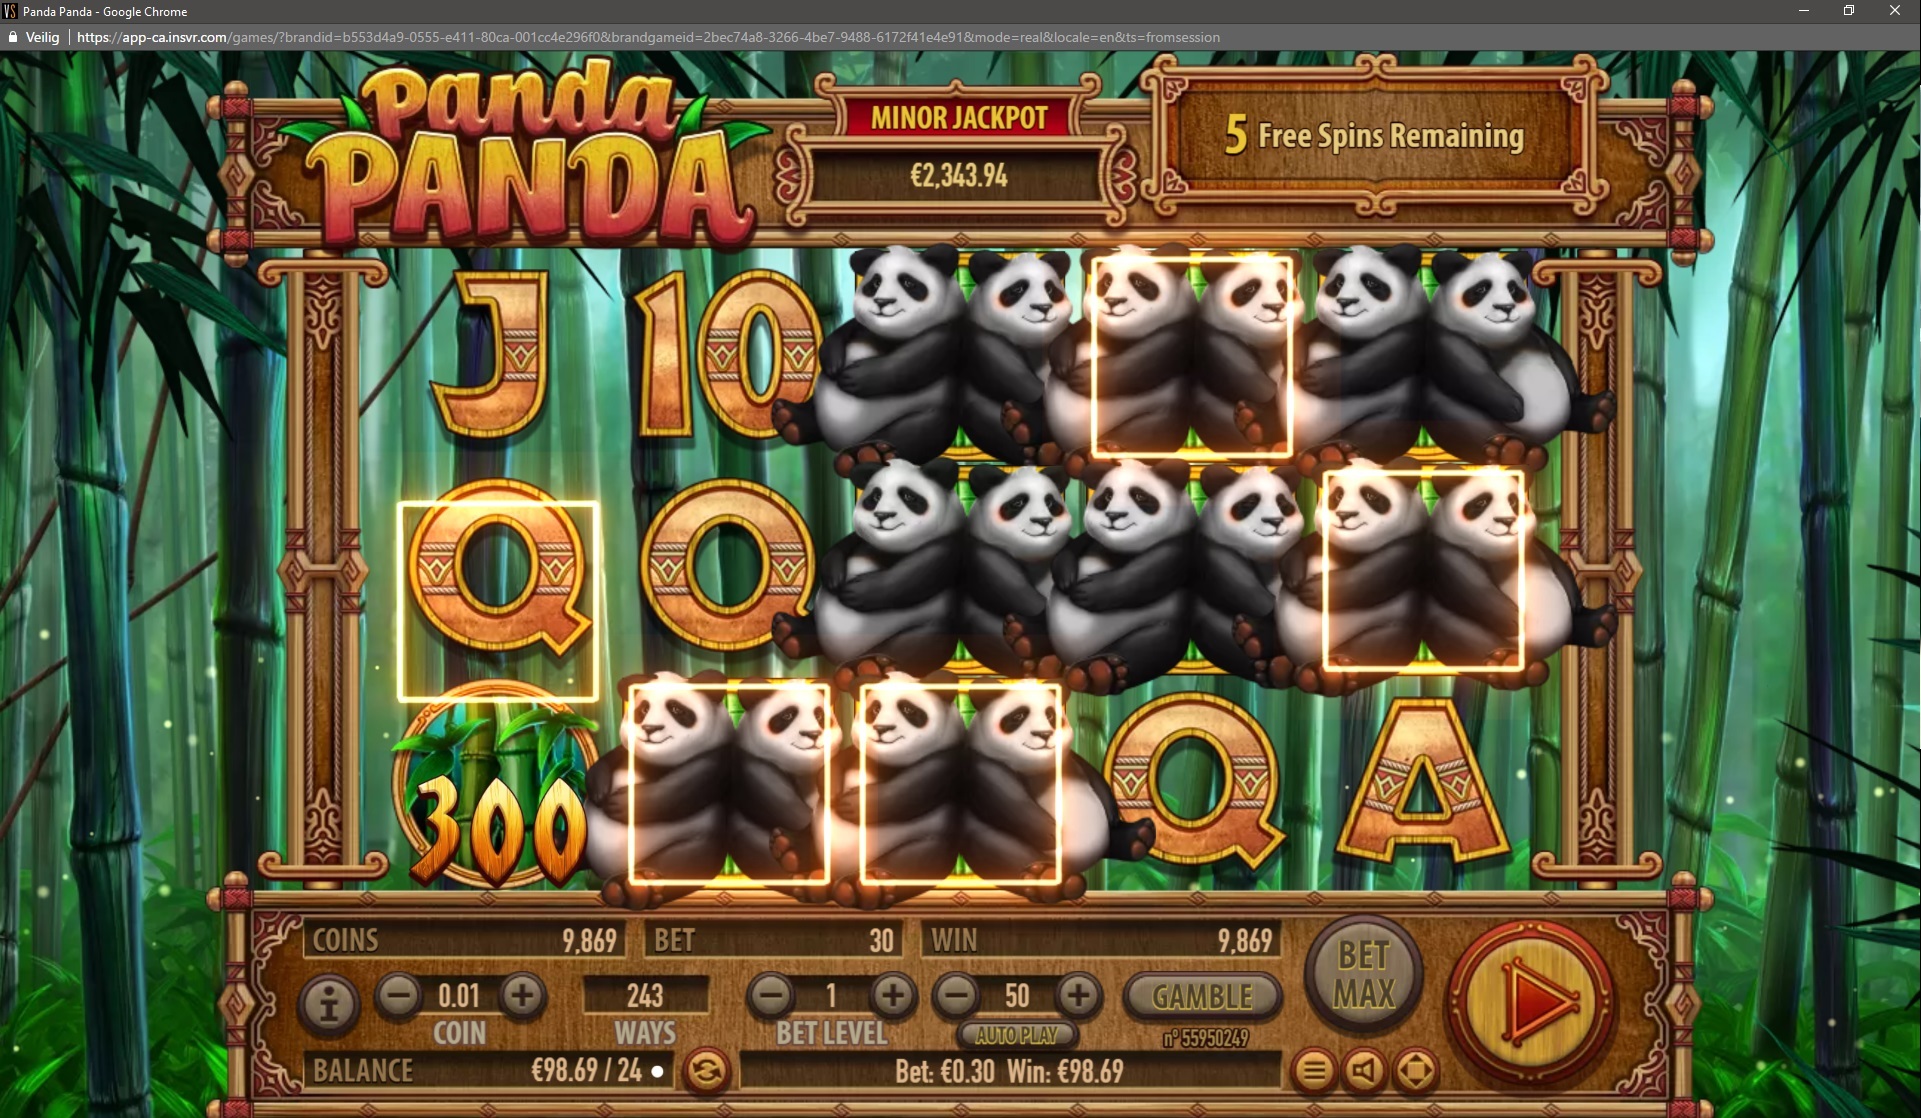 Panda Panda - Free spins